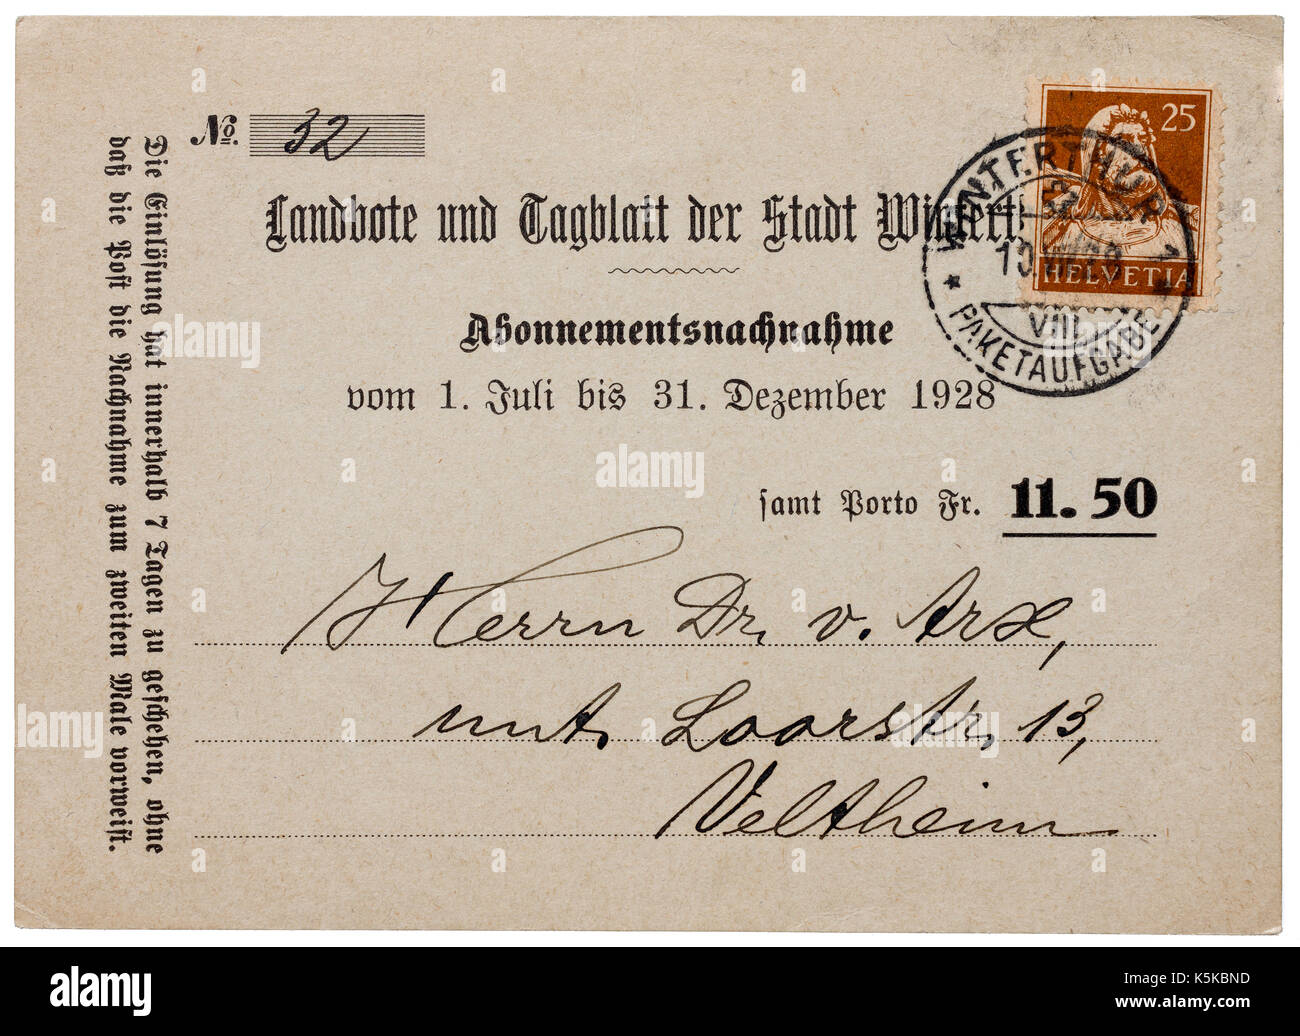 Carte postale suisse utilisé pour la facture d'abonnement magazine (mandat nachnahme) - Suisse. Banque D'Images